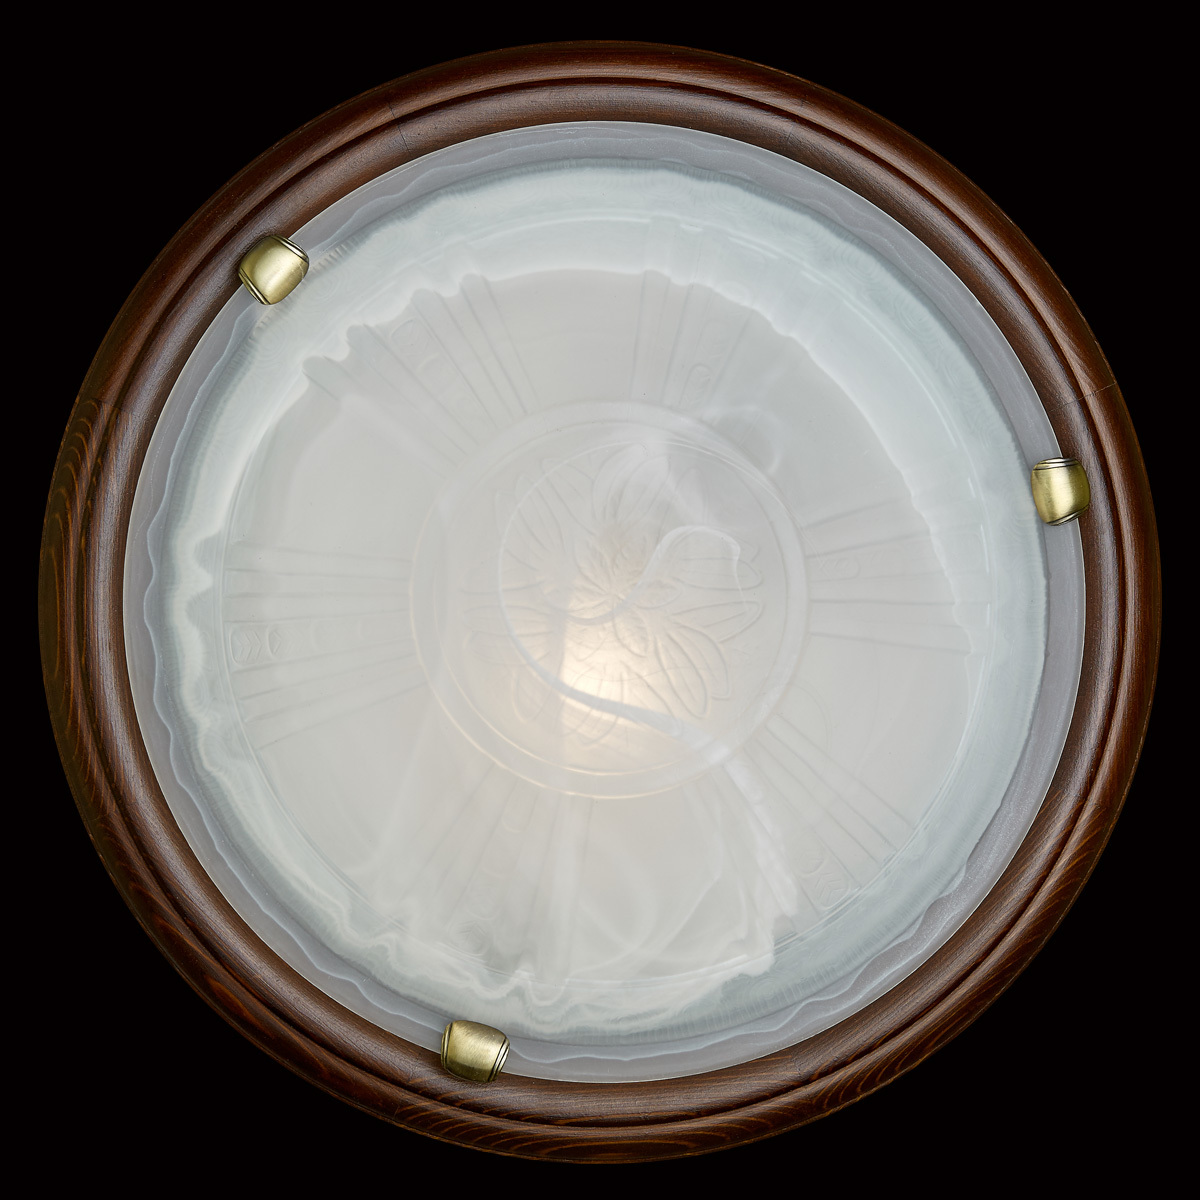 Потолочный светильник Sonex Lufe Wood 136/K, 2xE27x60W, коричневый, белый, дерево, стекло - фото 5